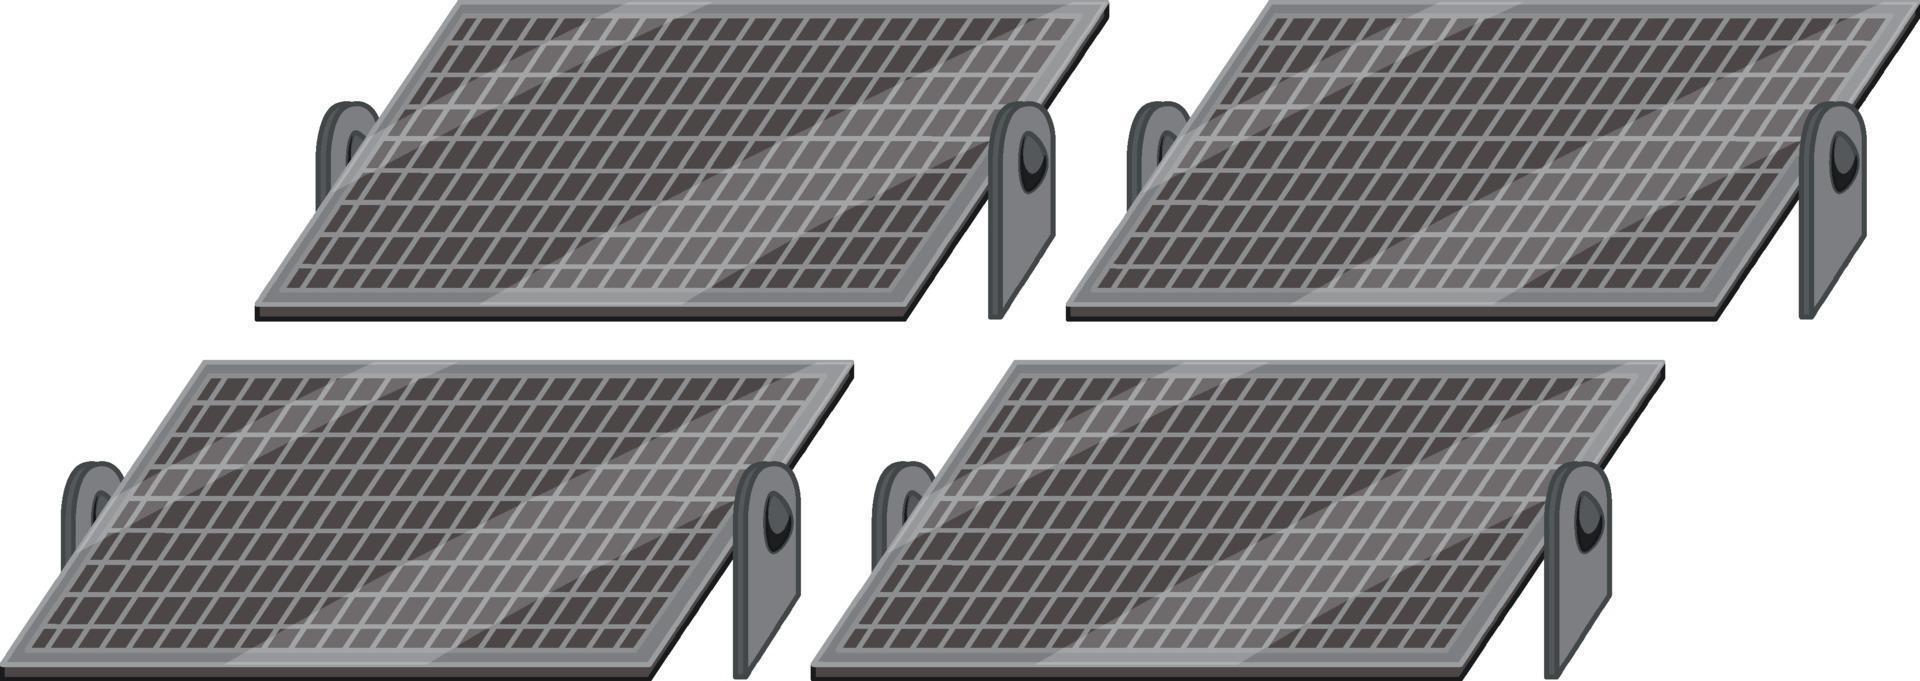 Paneles de células solares sobre fondo blanco. vector